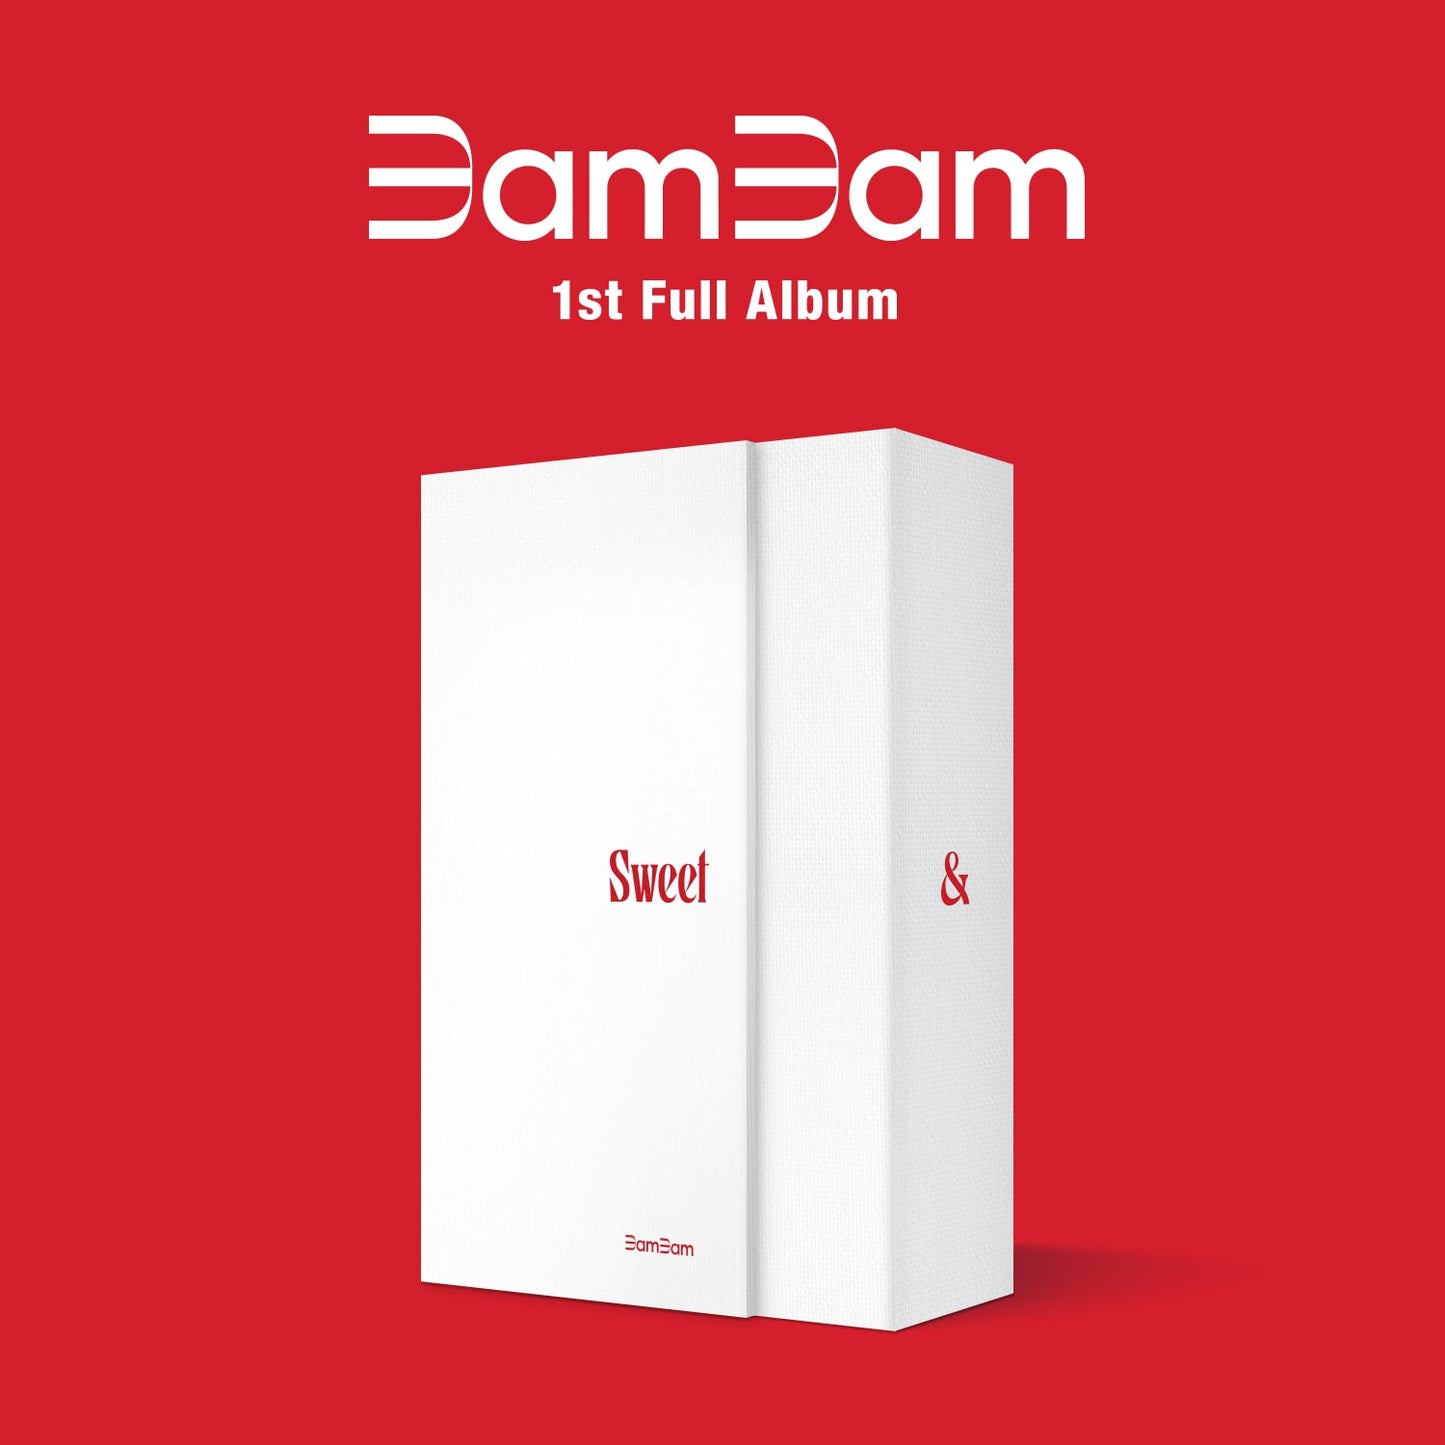 GOT7 | BamBam - 1st Full Album | Sour & Sweet